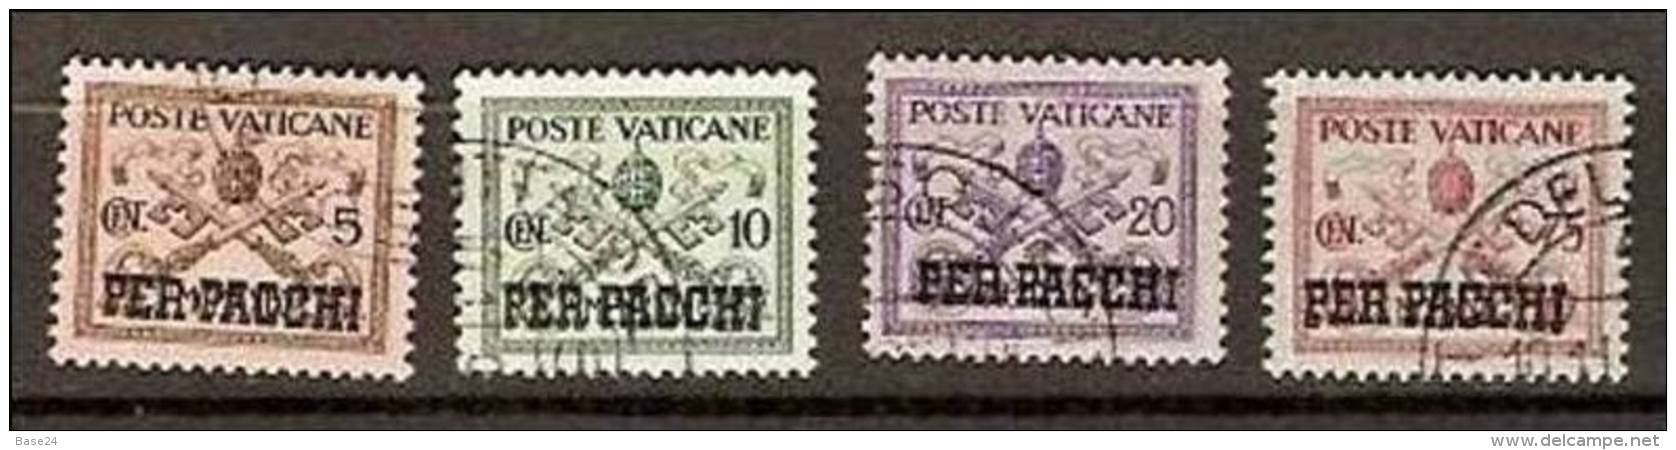 1931 Vaticano Vatican PACCHI POSTALI  5c+10c+20c+75c Usati USED Parcel Post - Paketmarken